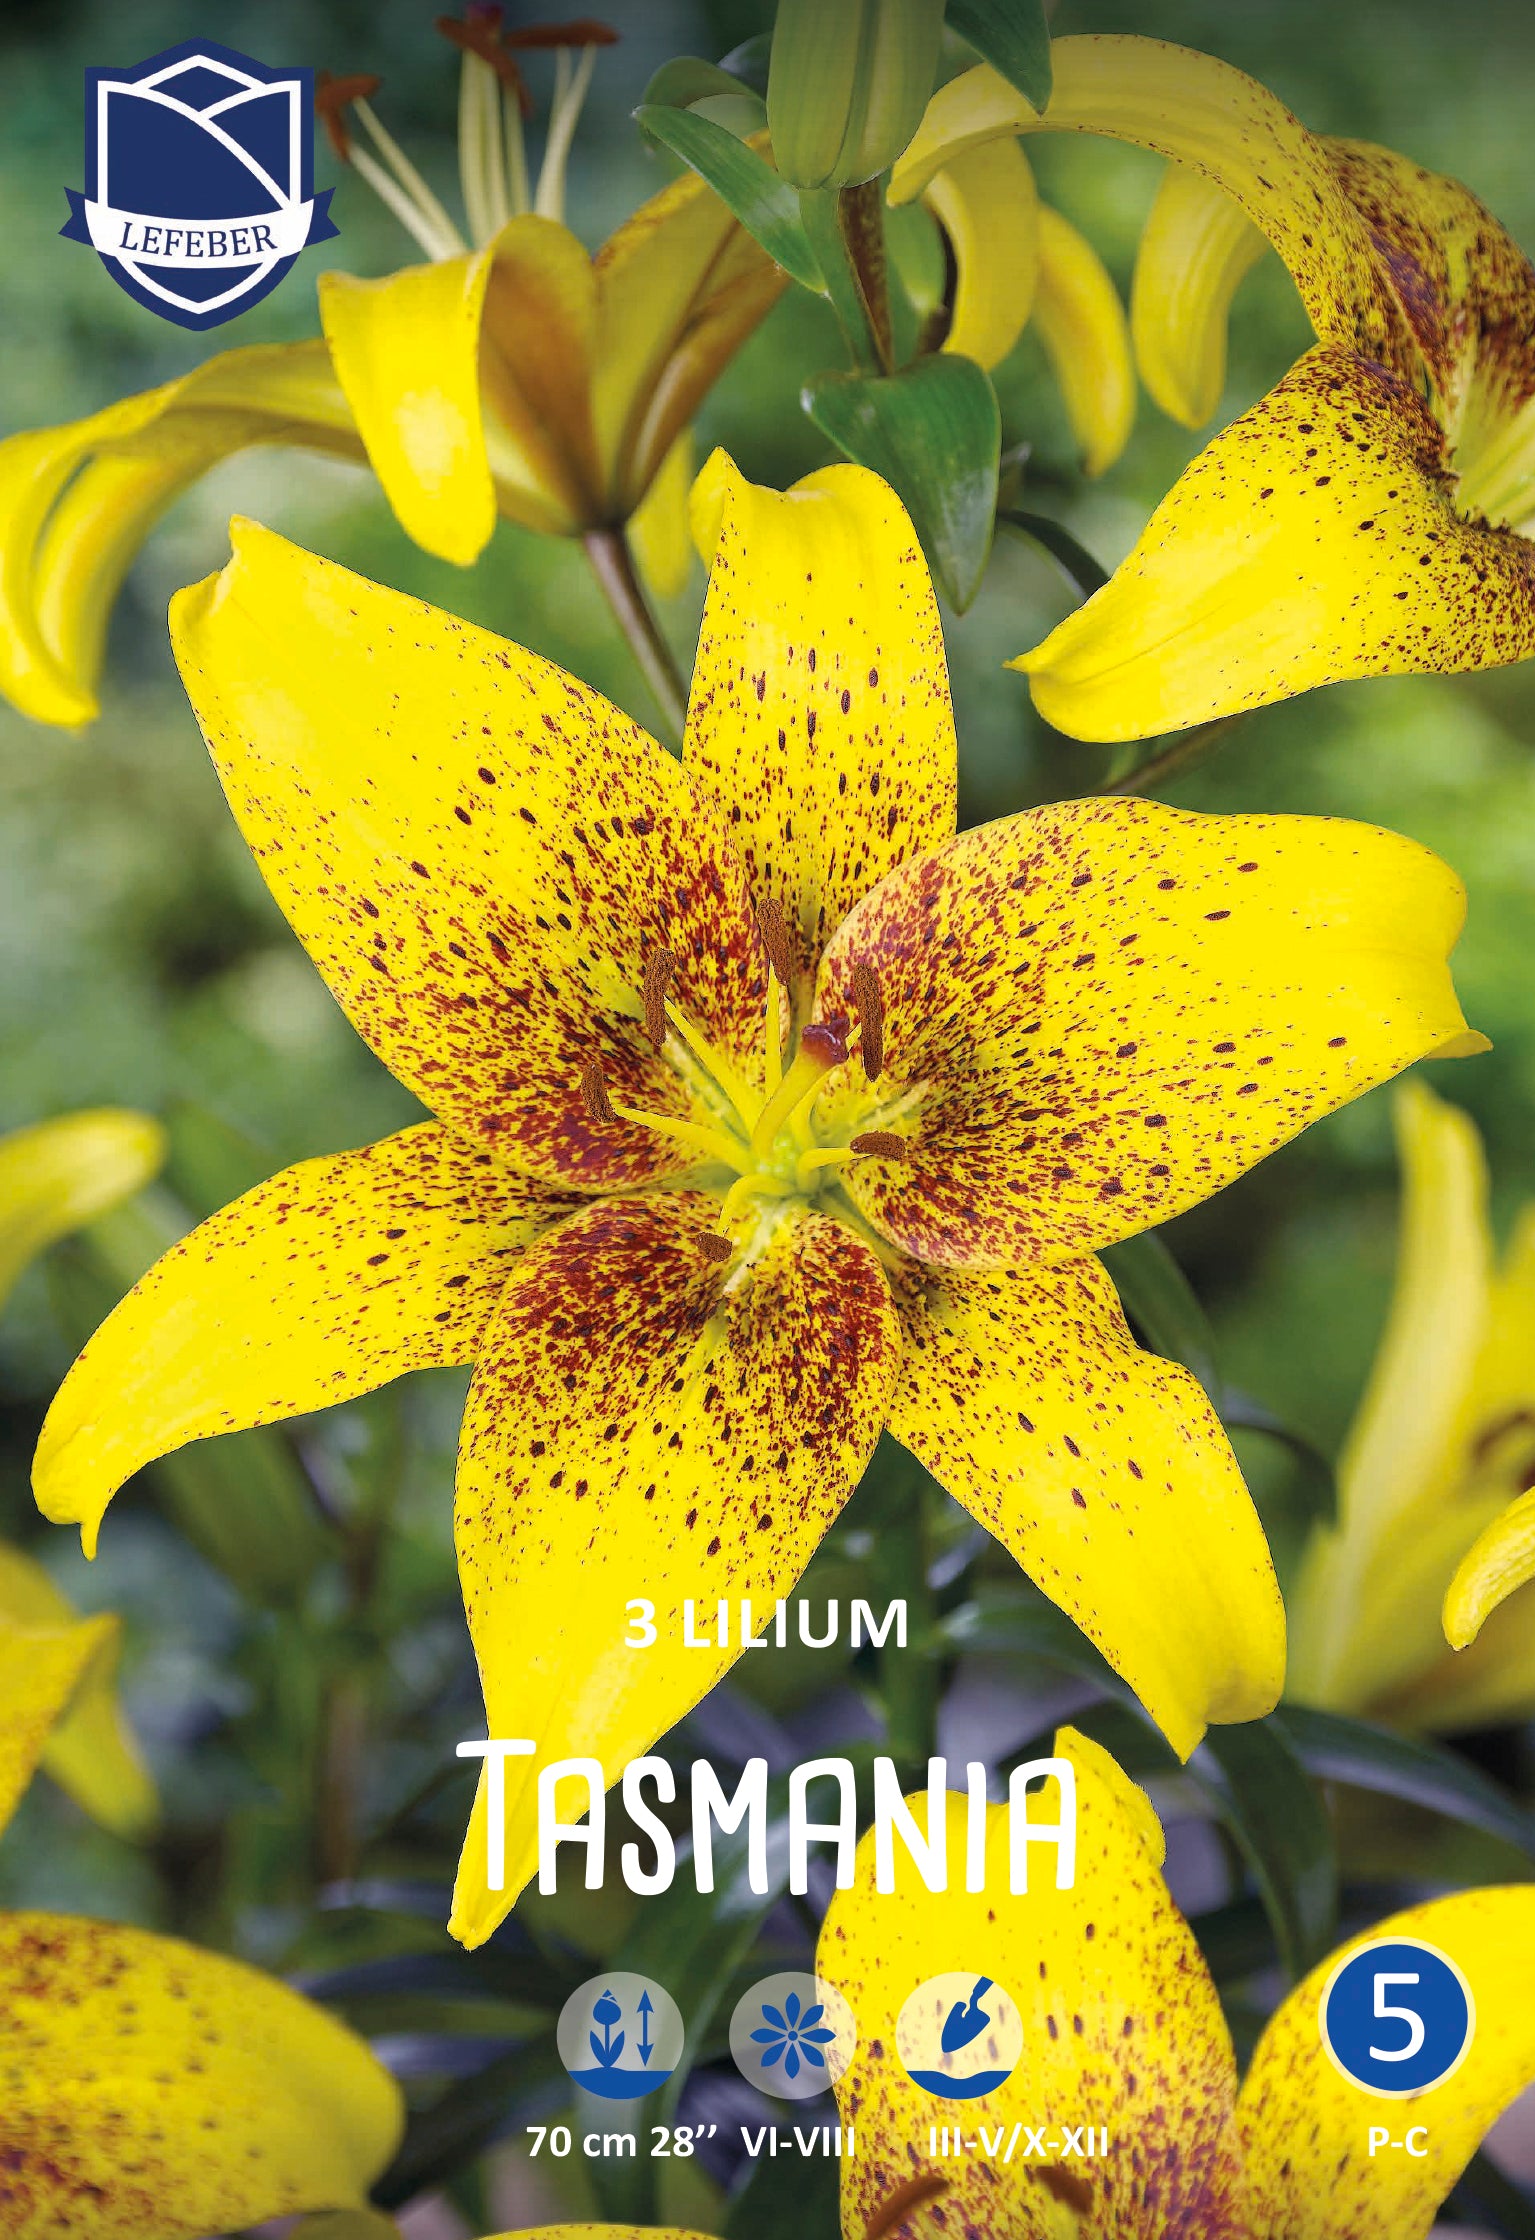 Lilie Tasmania